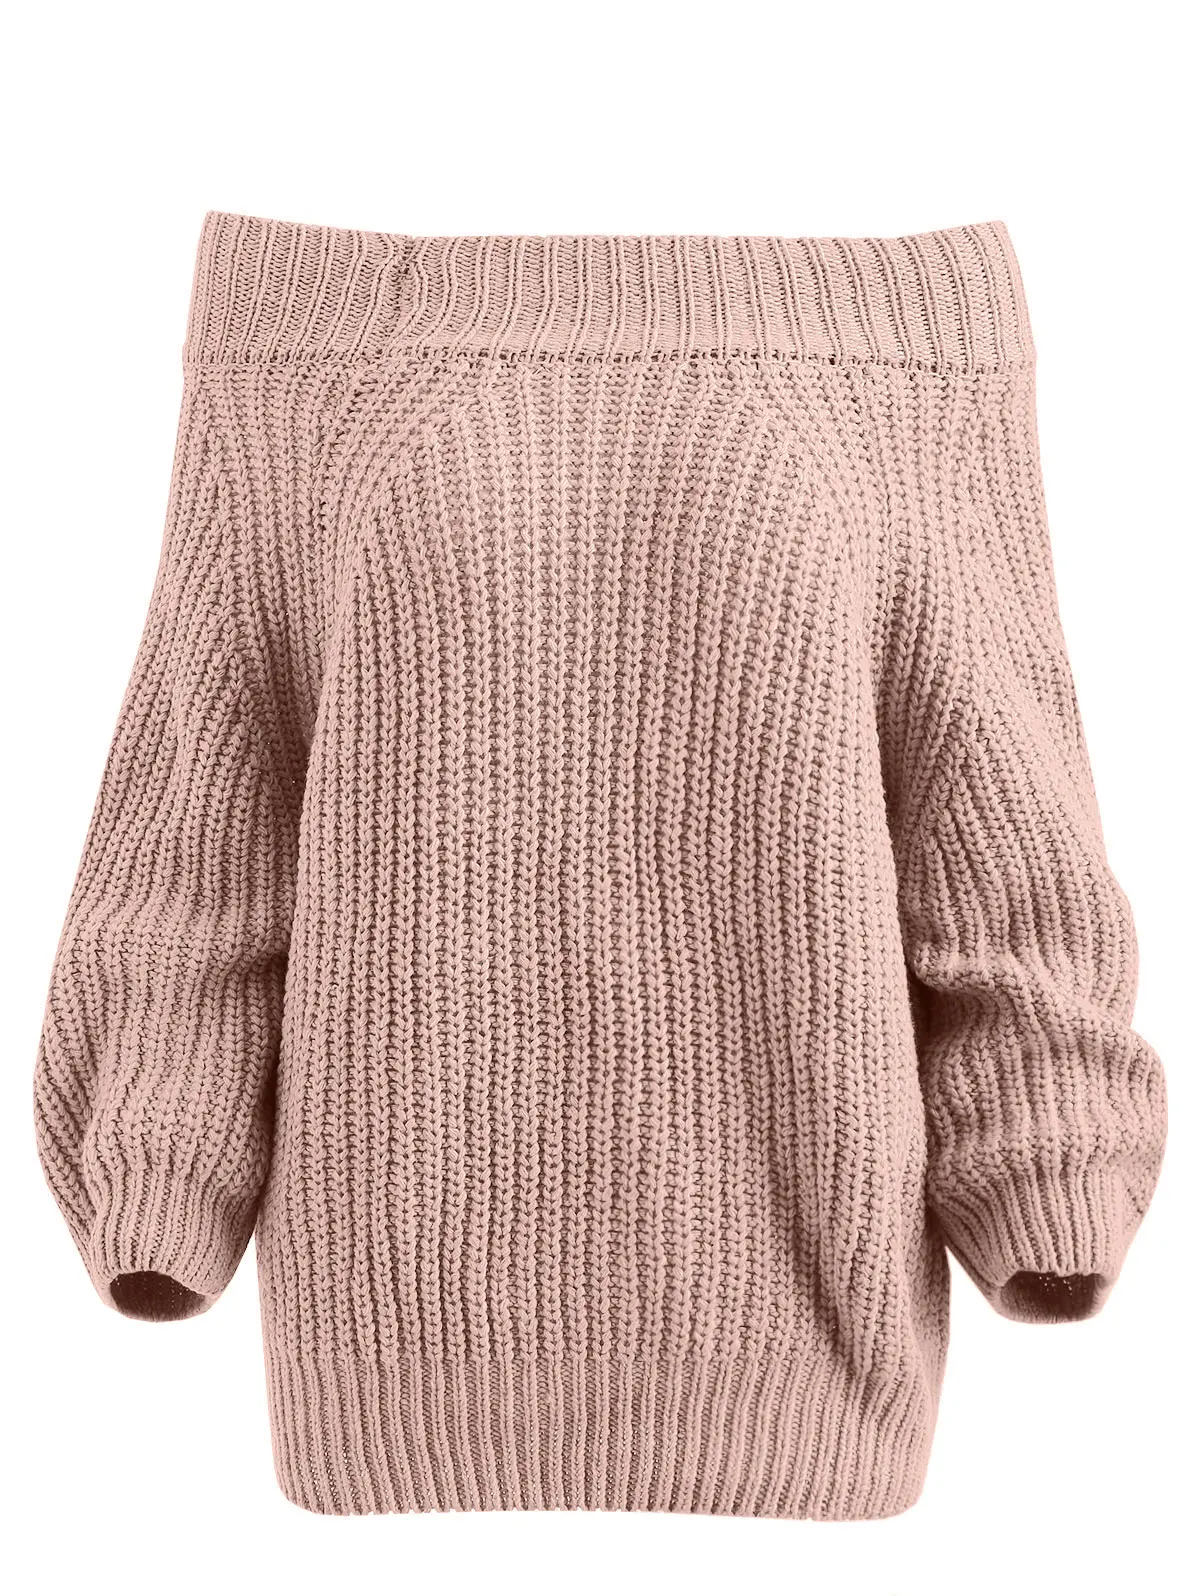 Wipalo Женский пуловер с открытыми плечами, джемпер с крупной вязкой и длинными рукавами - Цвет: Pink